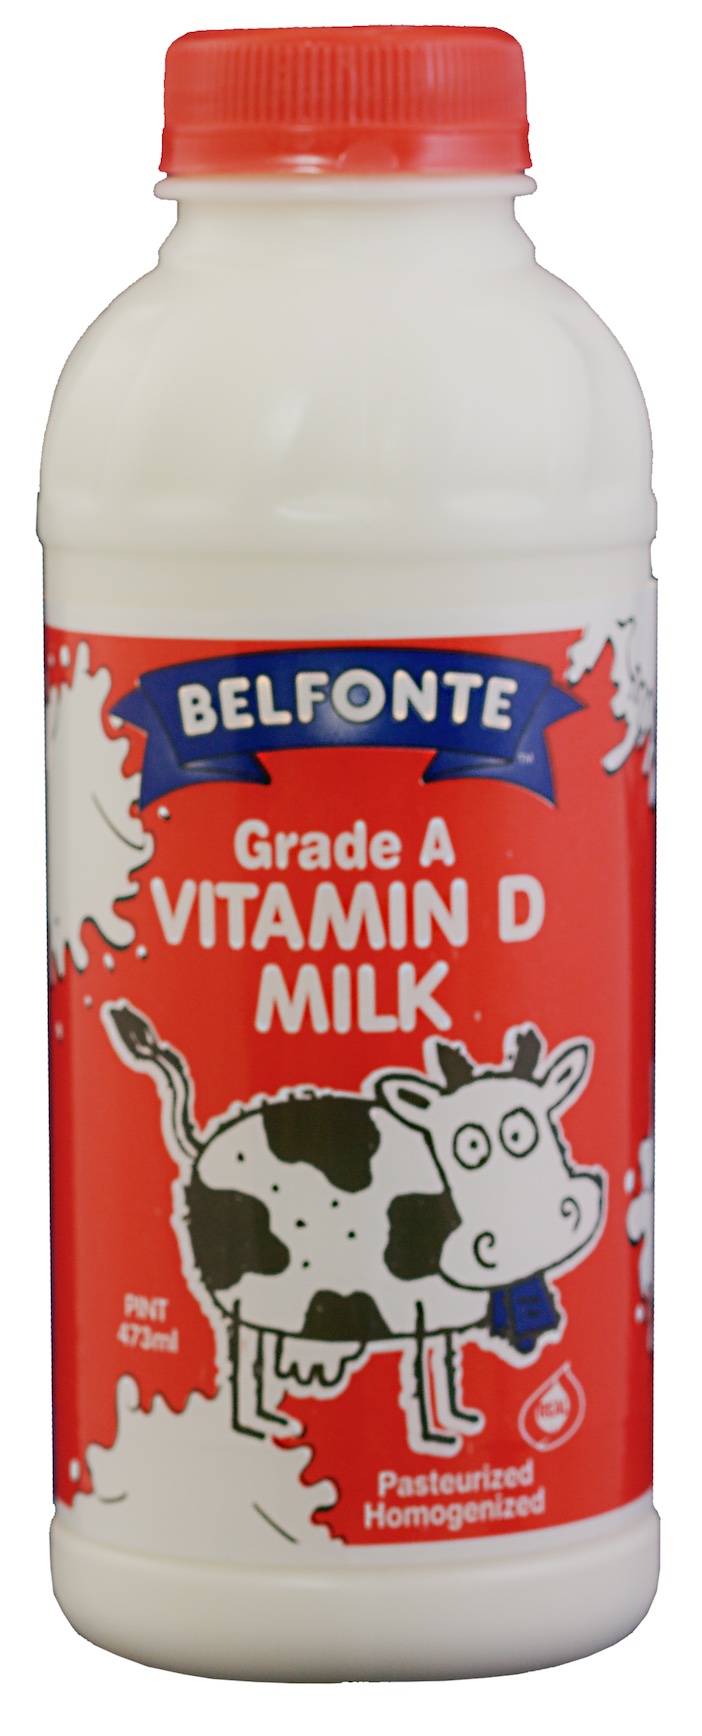 Vitamin D Milk – Pint